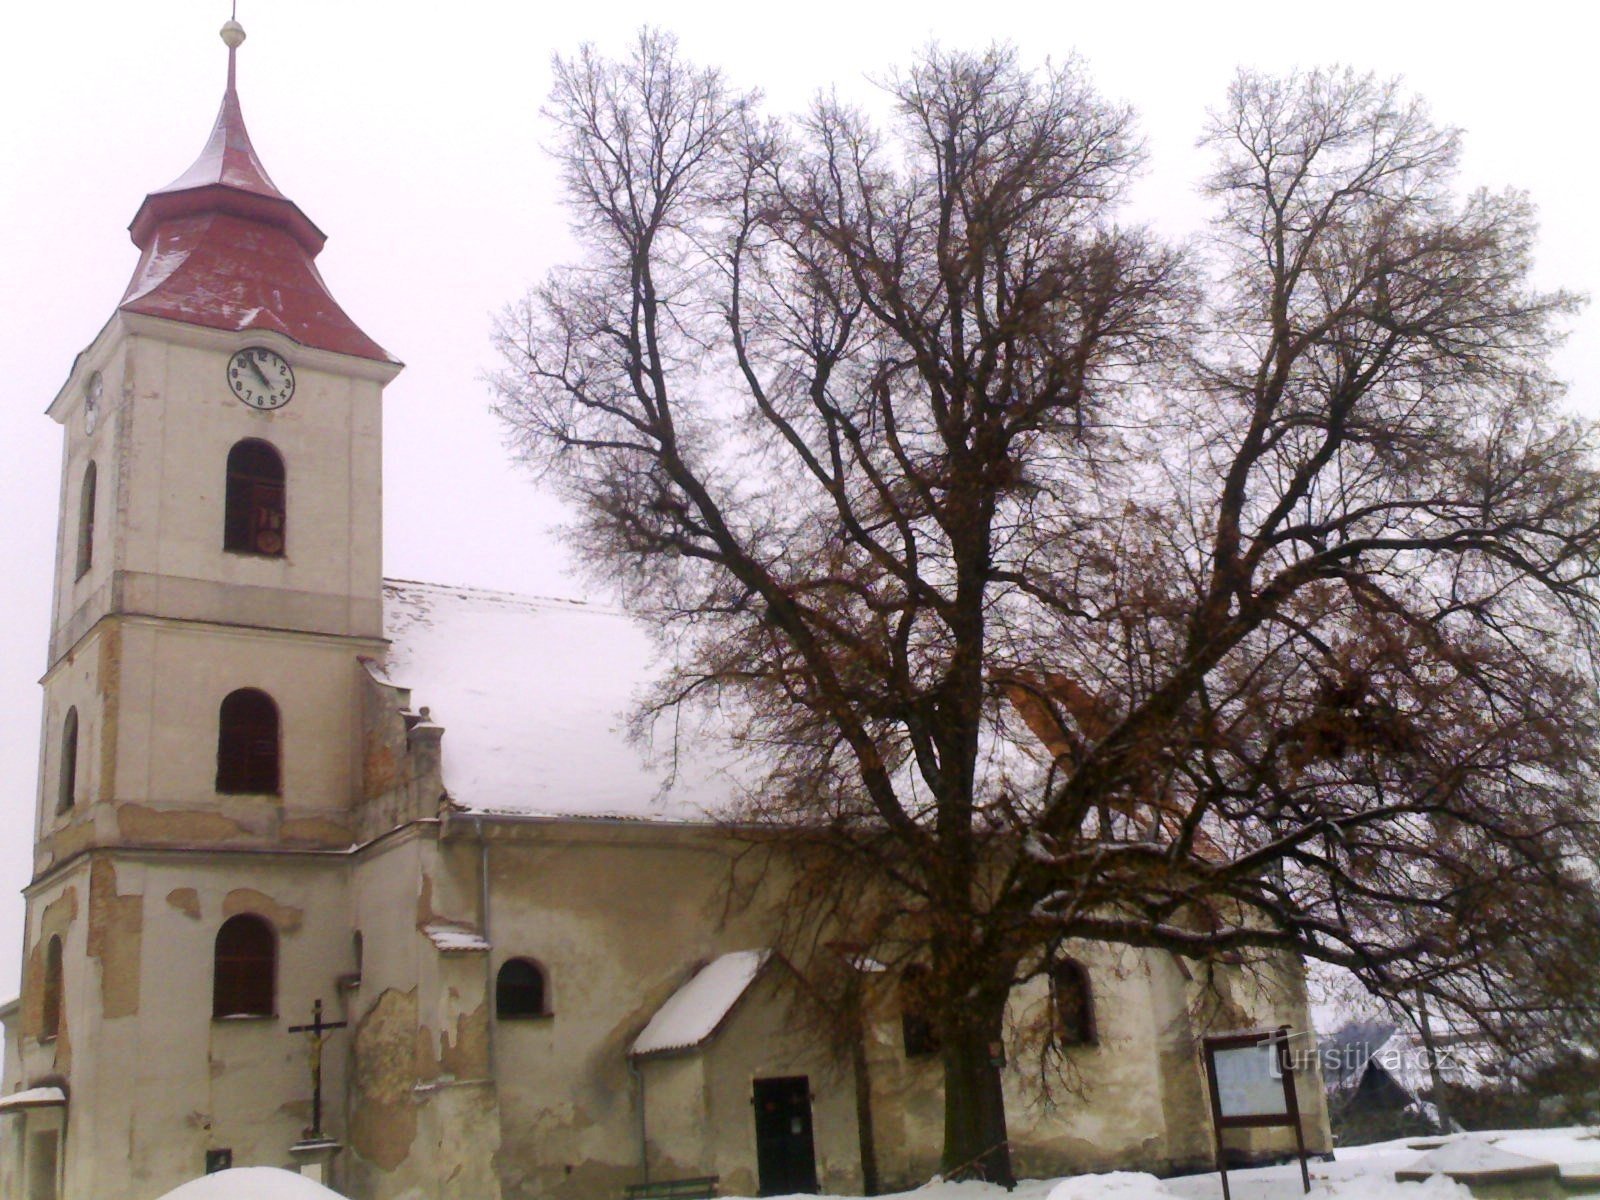 Žiželice - Pyhän Prokopin kirkko